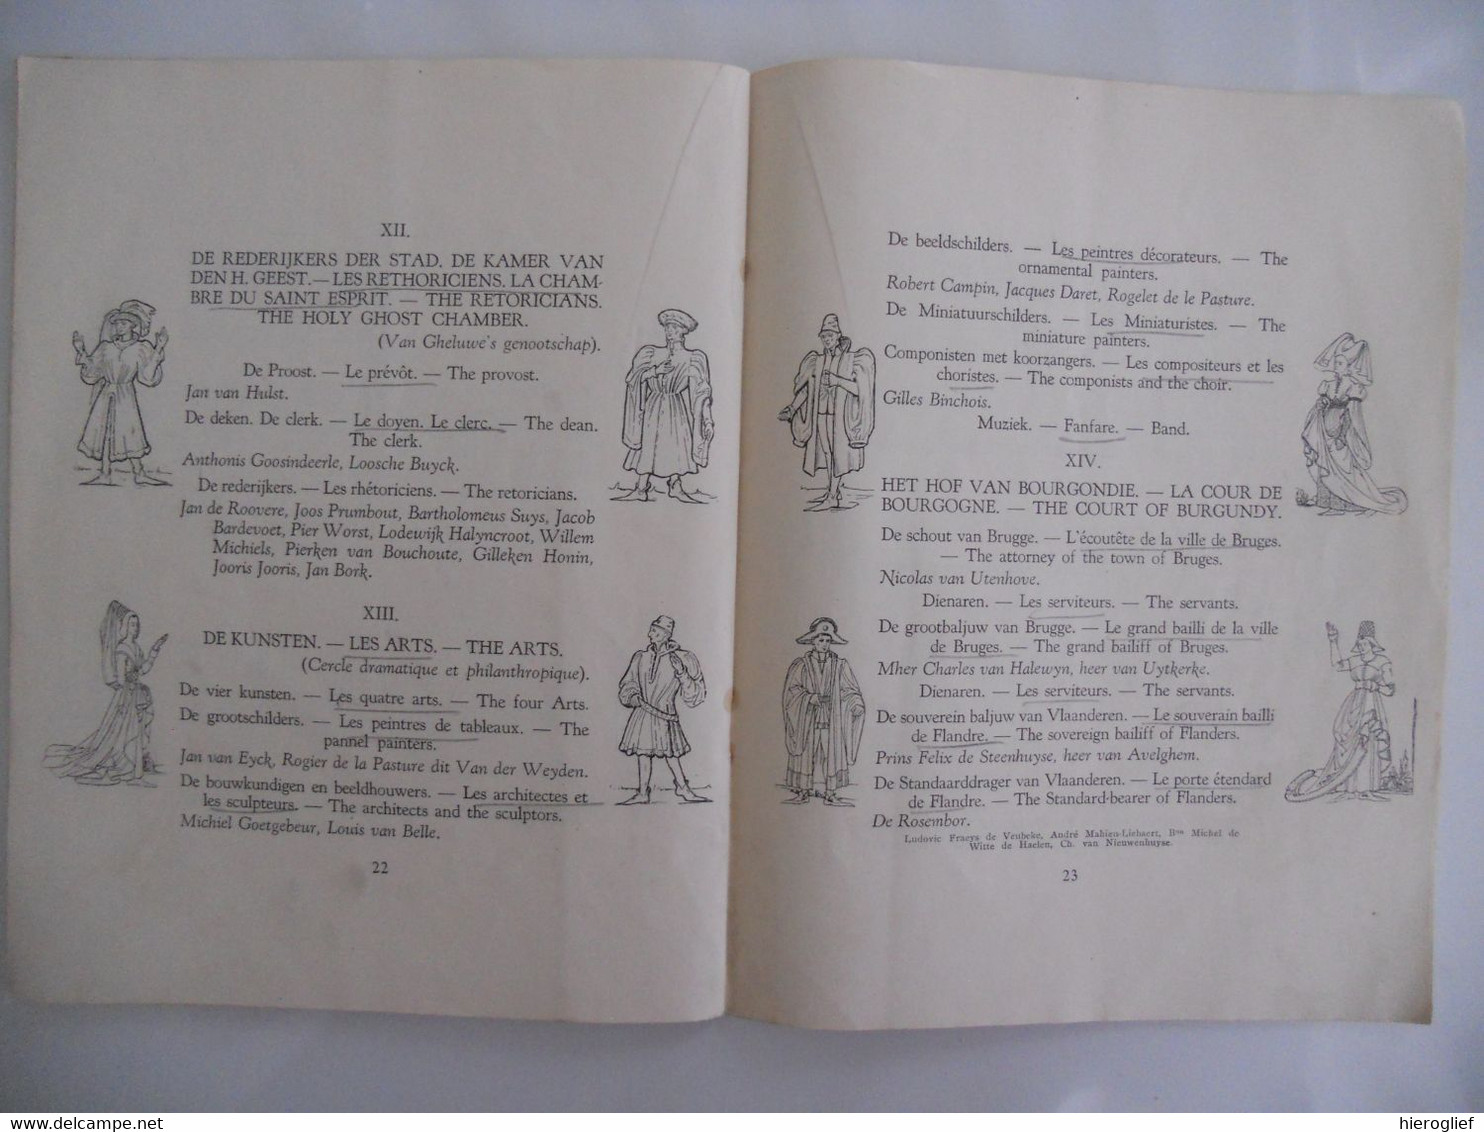 BRUGGE 1930 programma STOET VAN HET GULDEN VLIES CORTèGE DE LA TOISON D'OR PAGEANT OF THE GOLDEN FLEECE